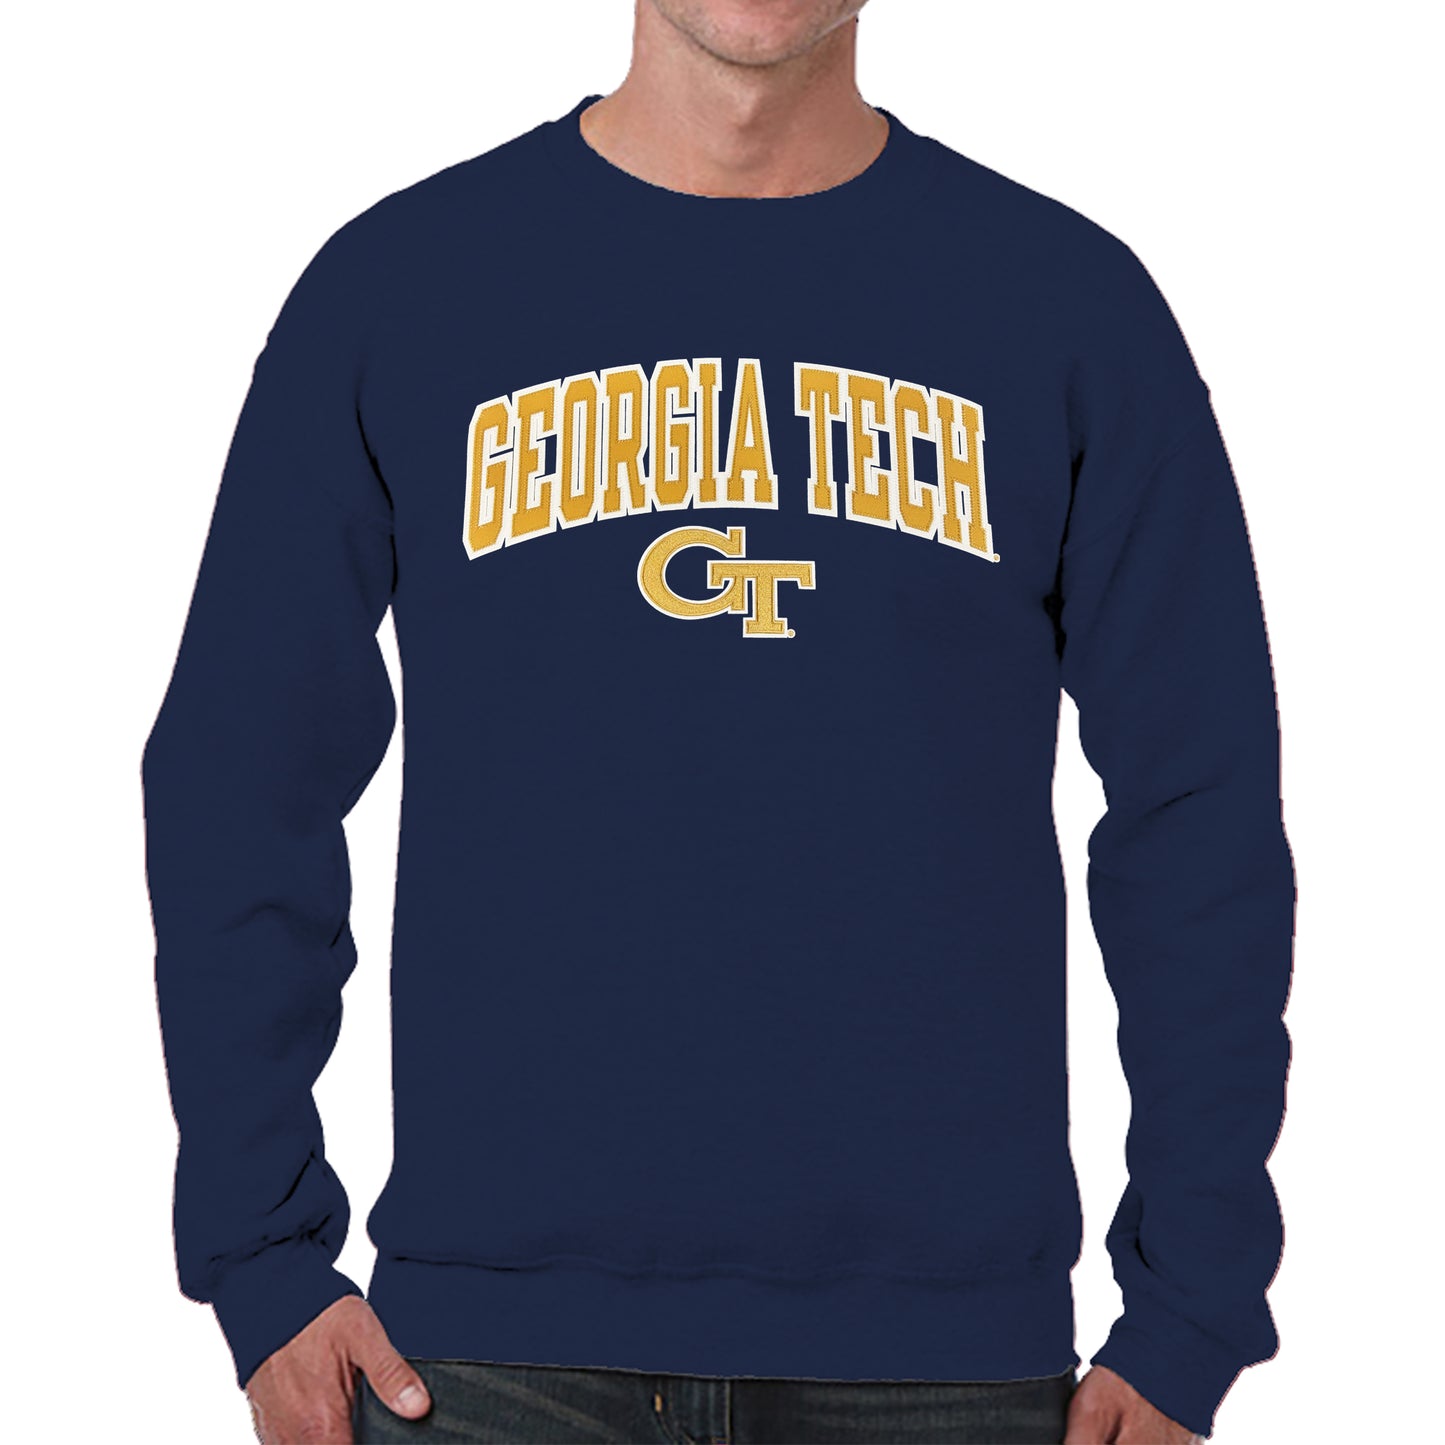 Georgia Tech Yellowjackets NCAA Adult Tackle Twill Crewneck Sweatshirt - Navy